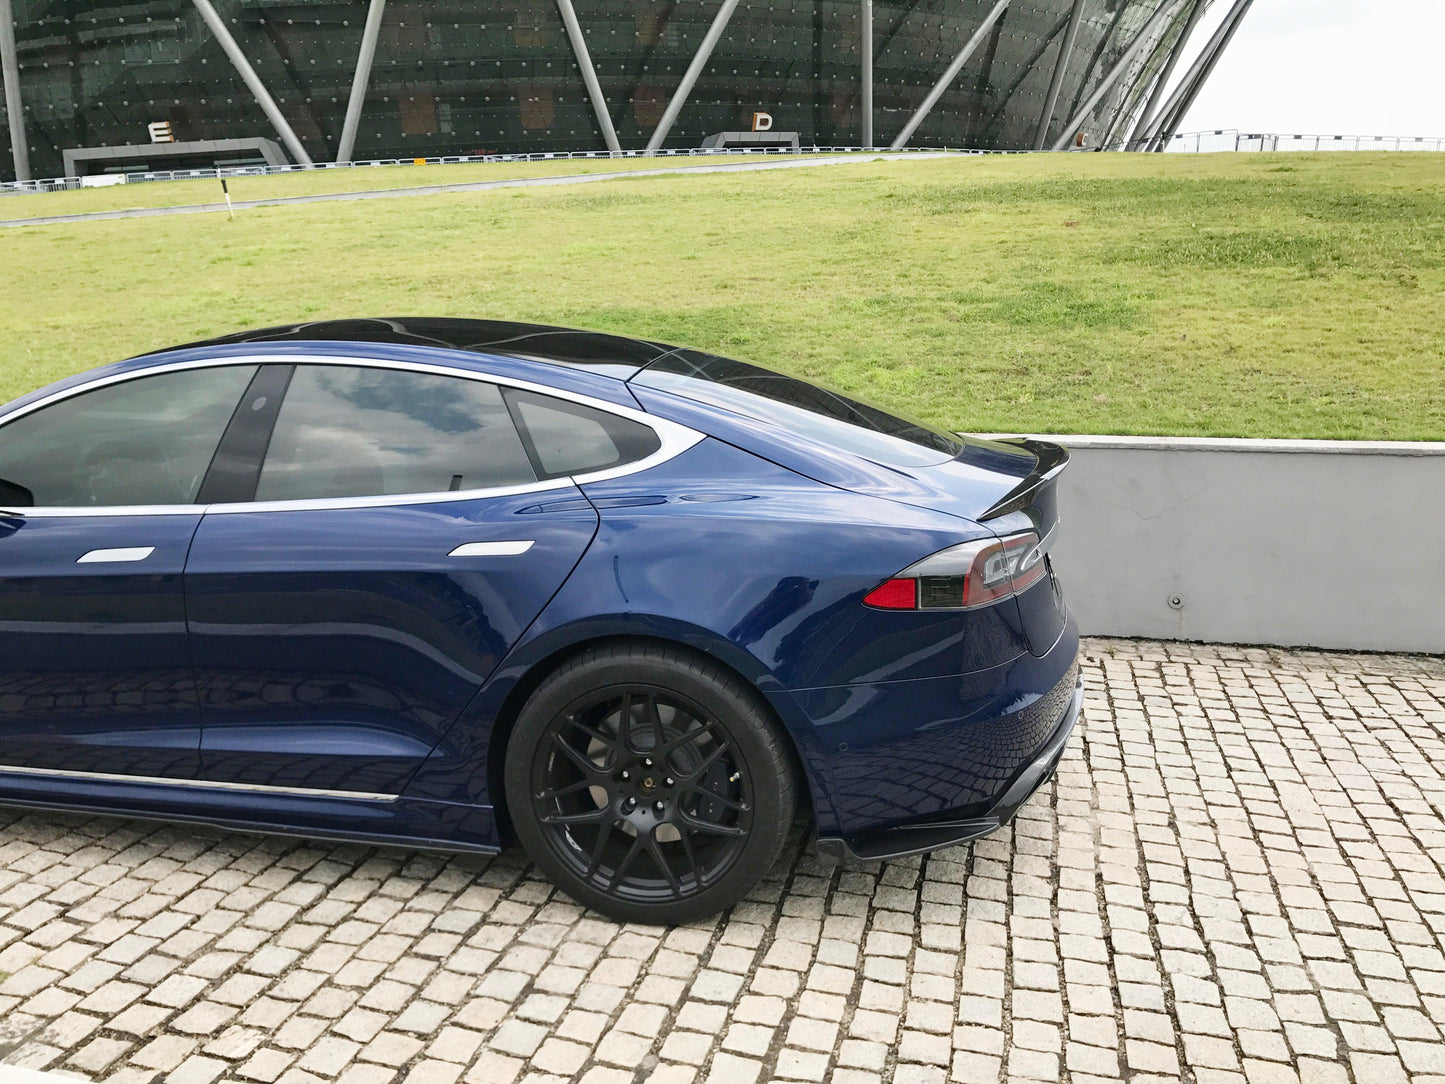 Tesla Model S 70D Carbon Fibre Rear Diffuser Extensions 16-17-Carbon Factory